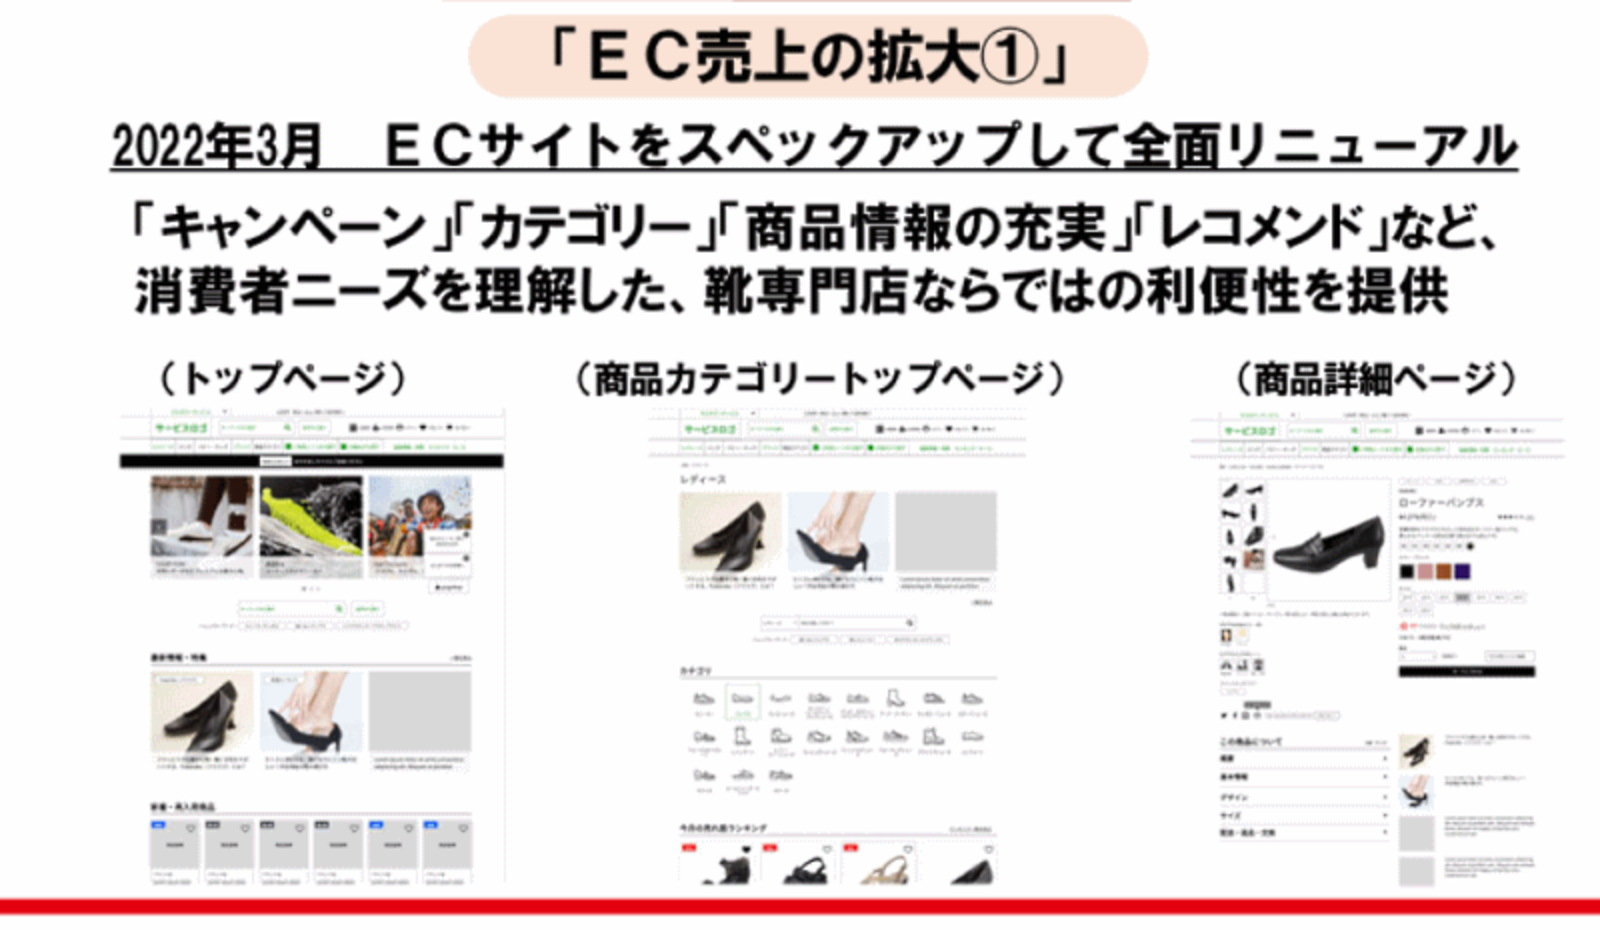 東京靴流通センター」などのチヨダ、ECサイト刷新やOMO推進でEC売上高を40億円まで拡大する計画 | ネットショップ担当者フォーラム